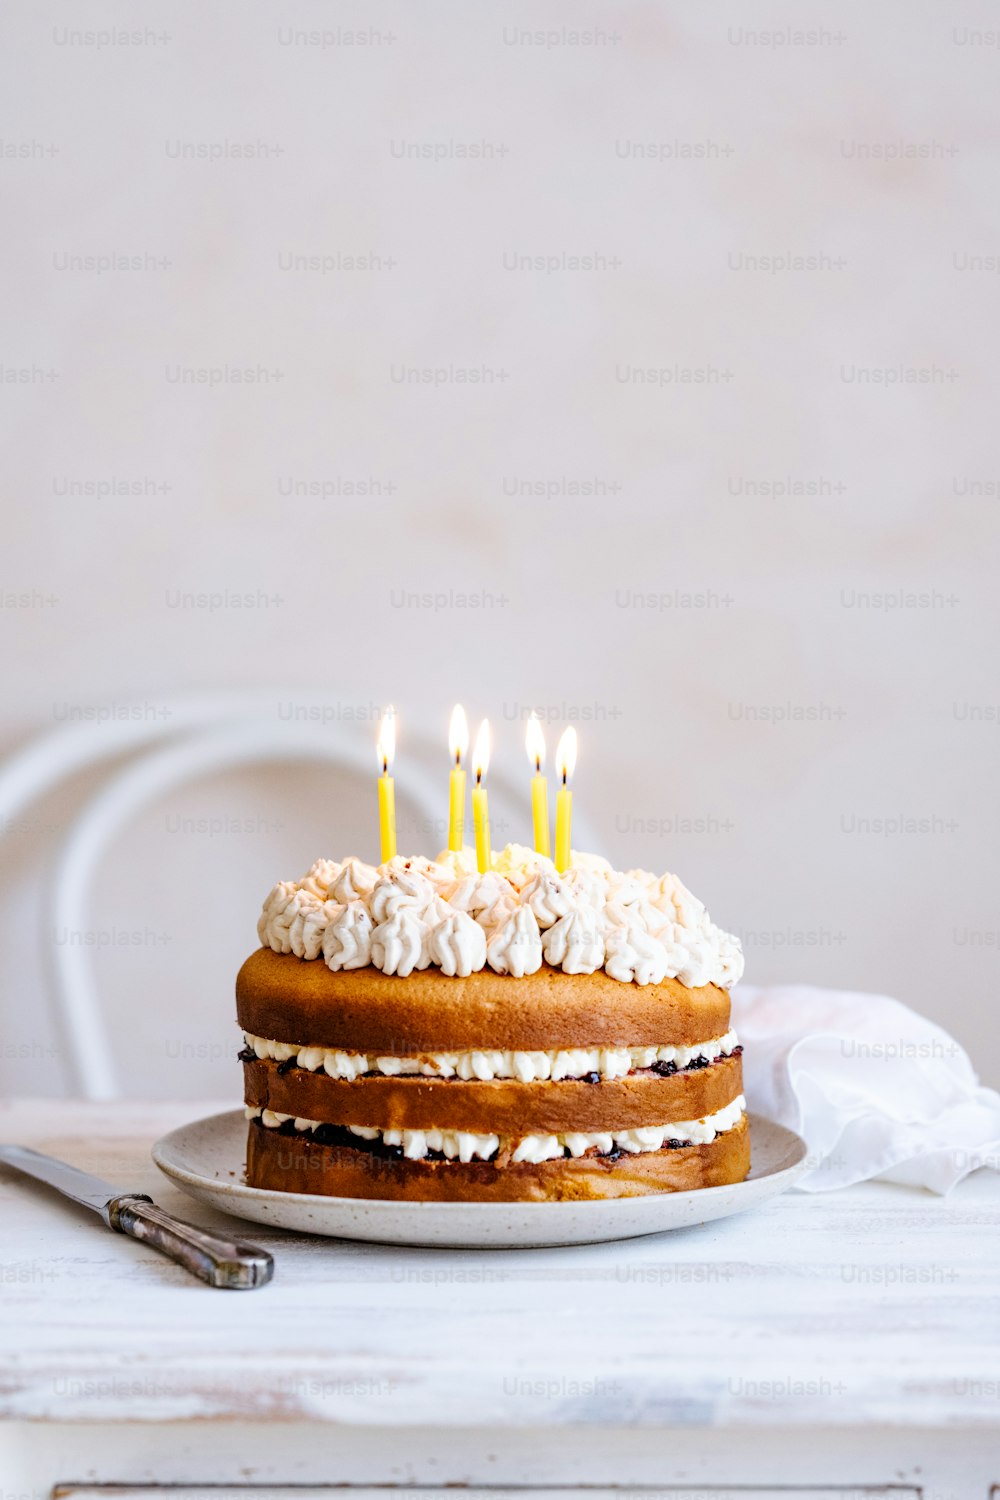 um bolo com cobertura branca e velas acesas